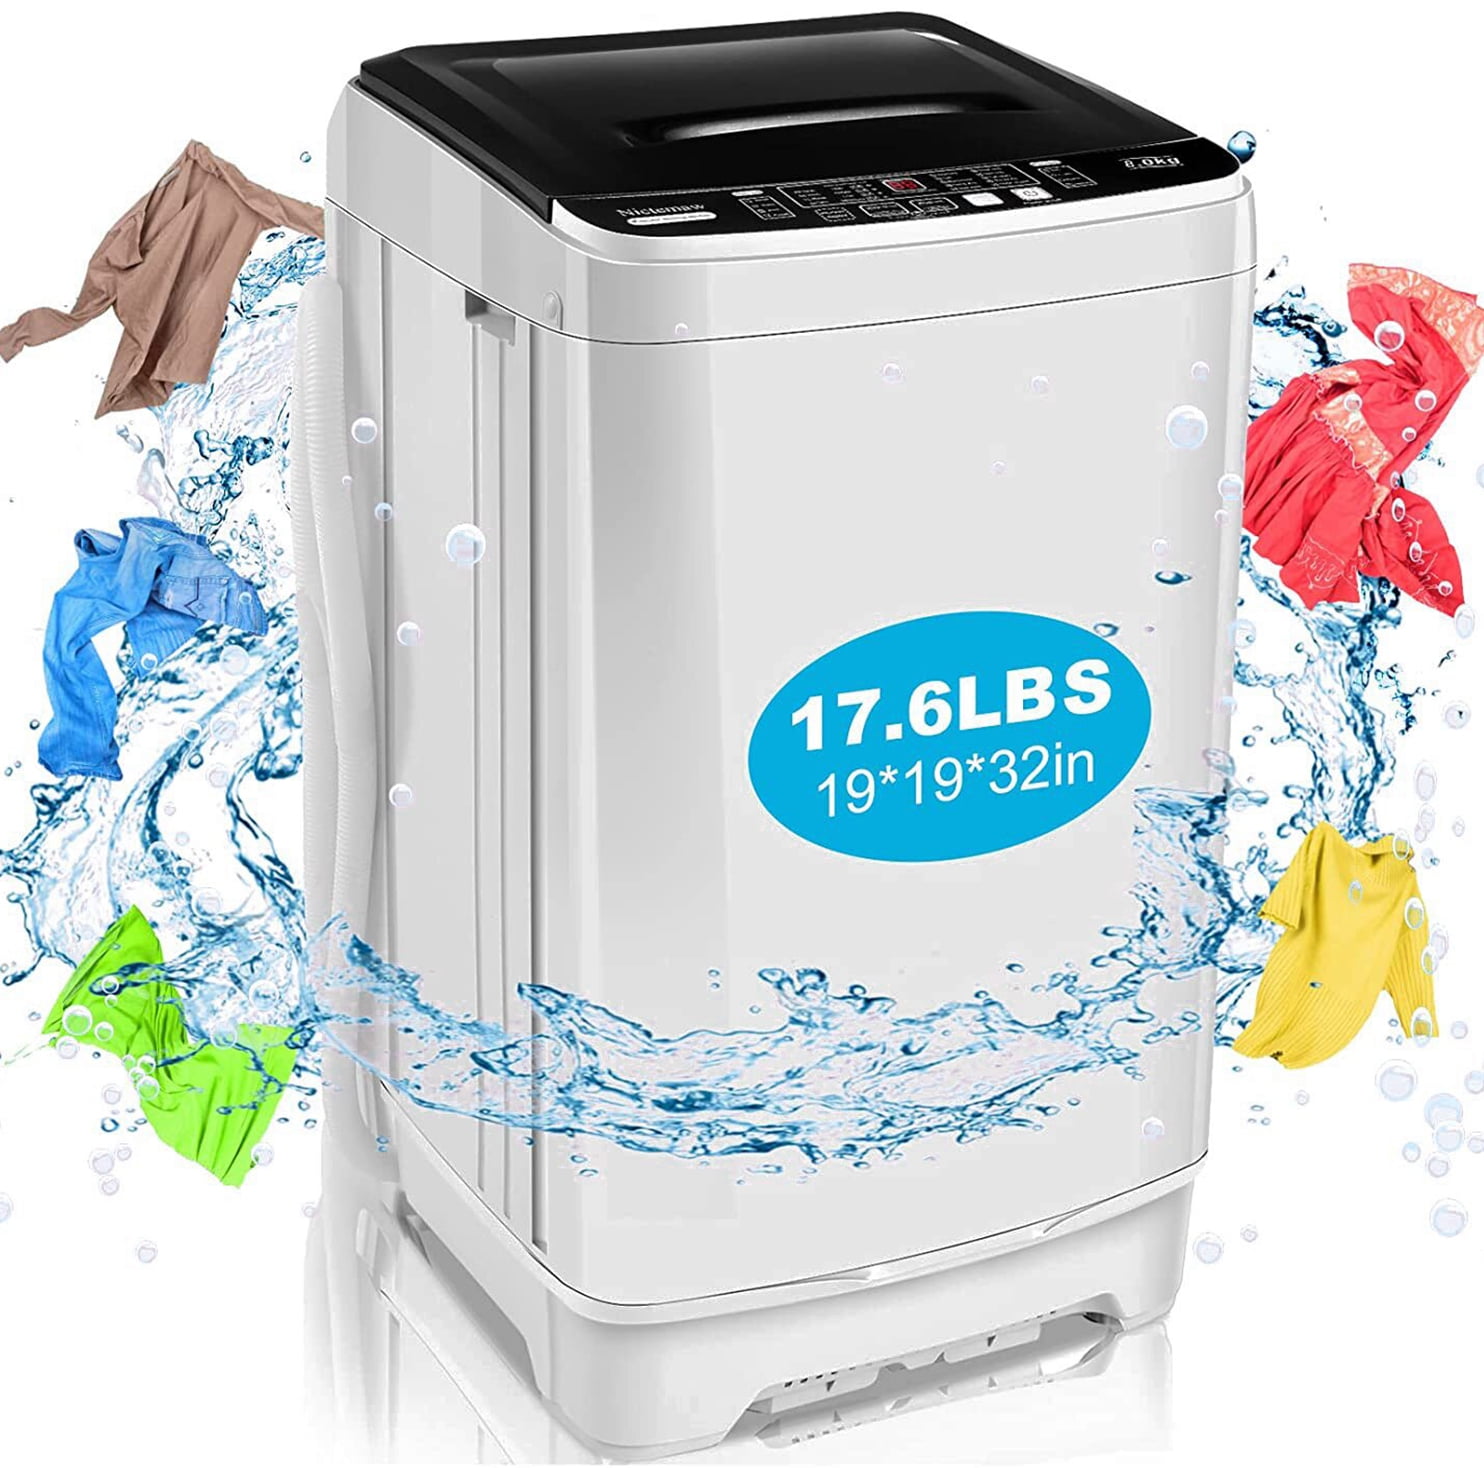 Best Portable Washing Machine